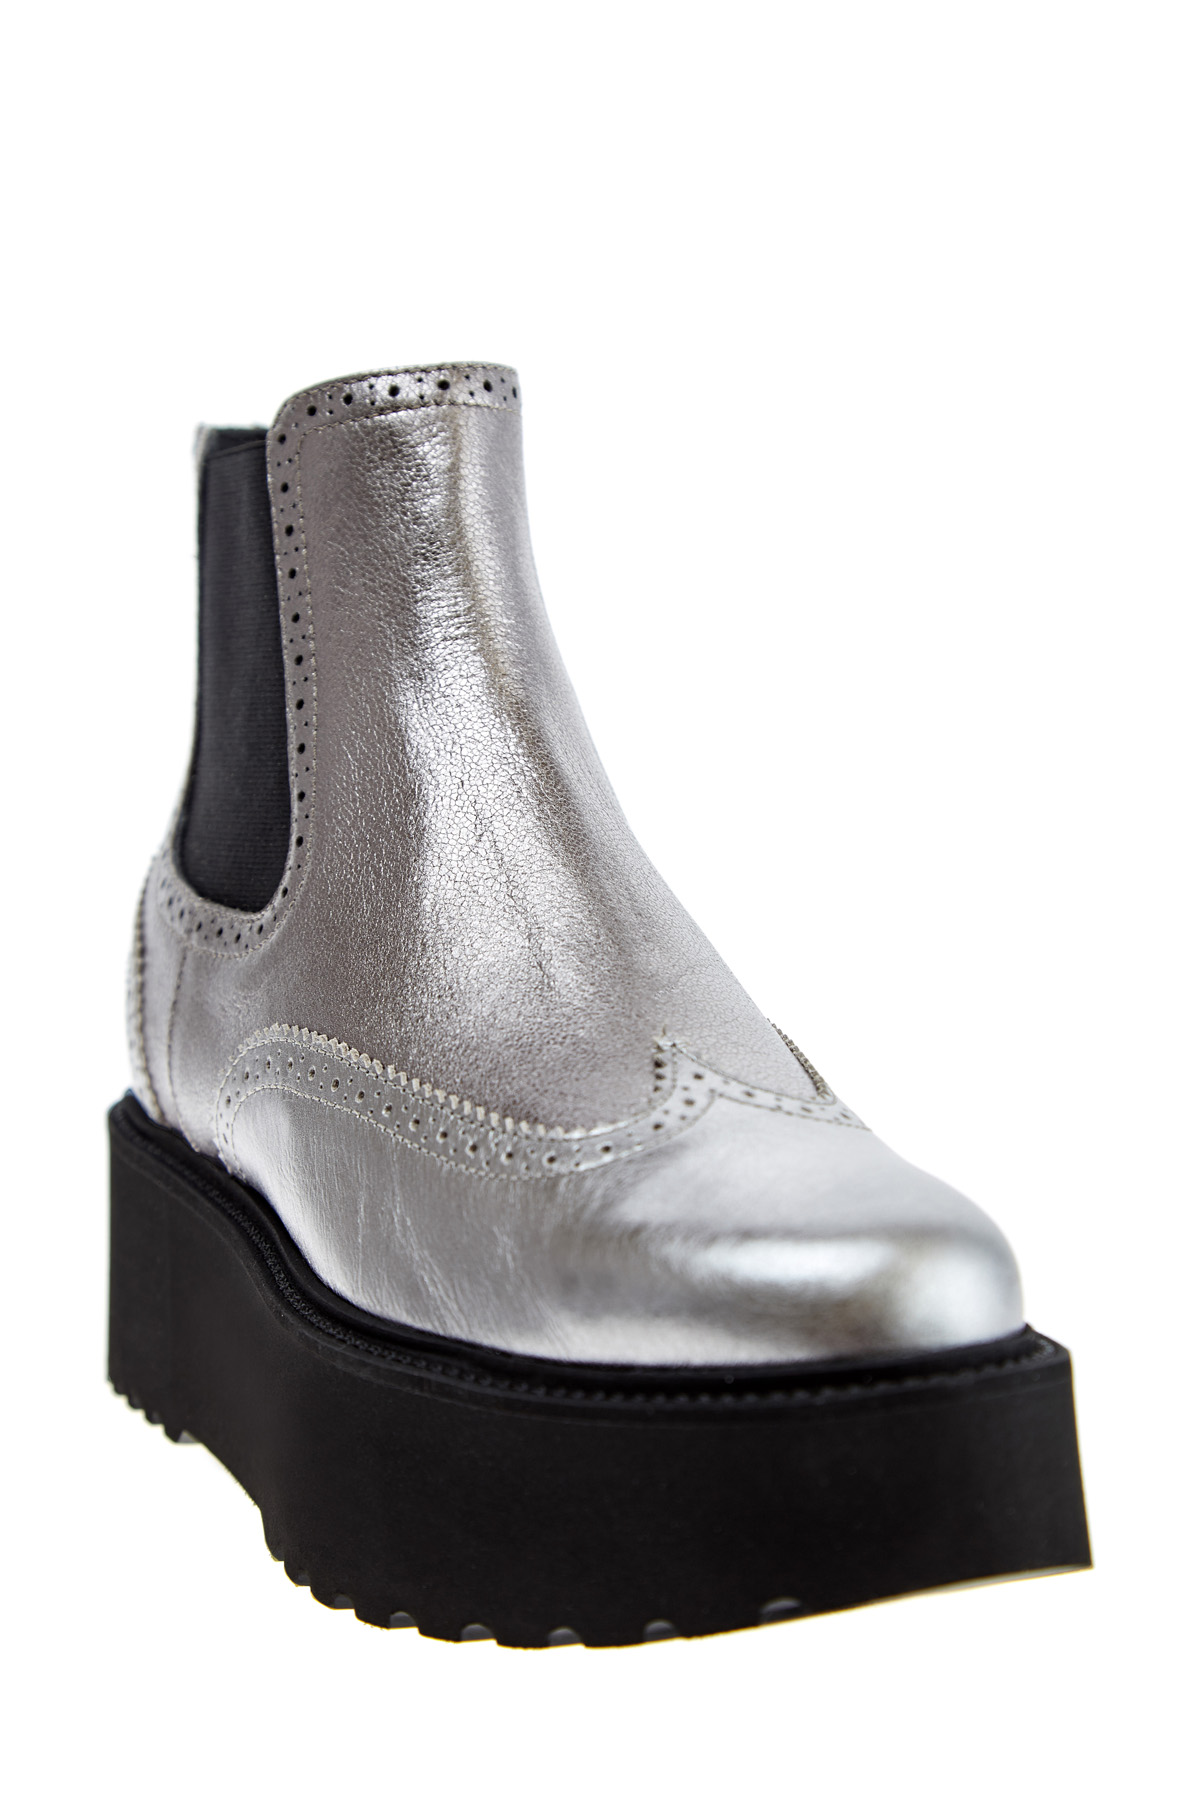 Ботинки с металлизированной отделкой с массивной подошвой HOGAN, цвет серебристый, размер 40;40.5;41 - фото 3